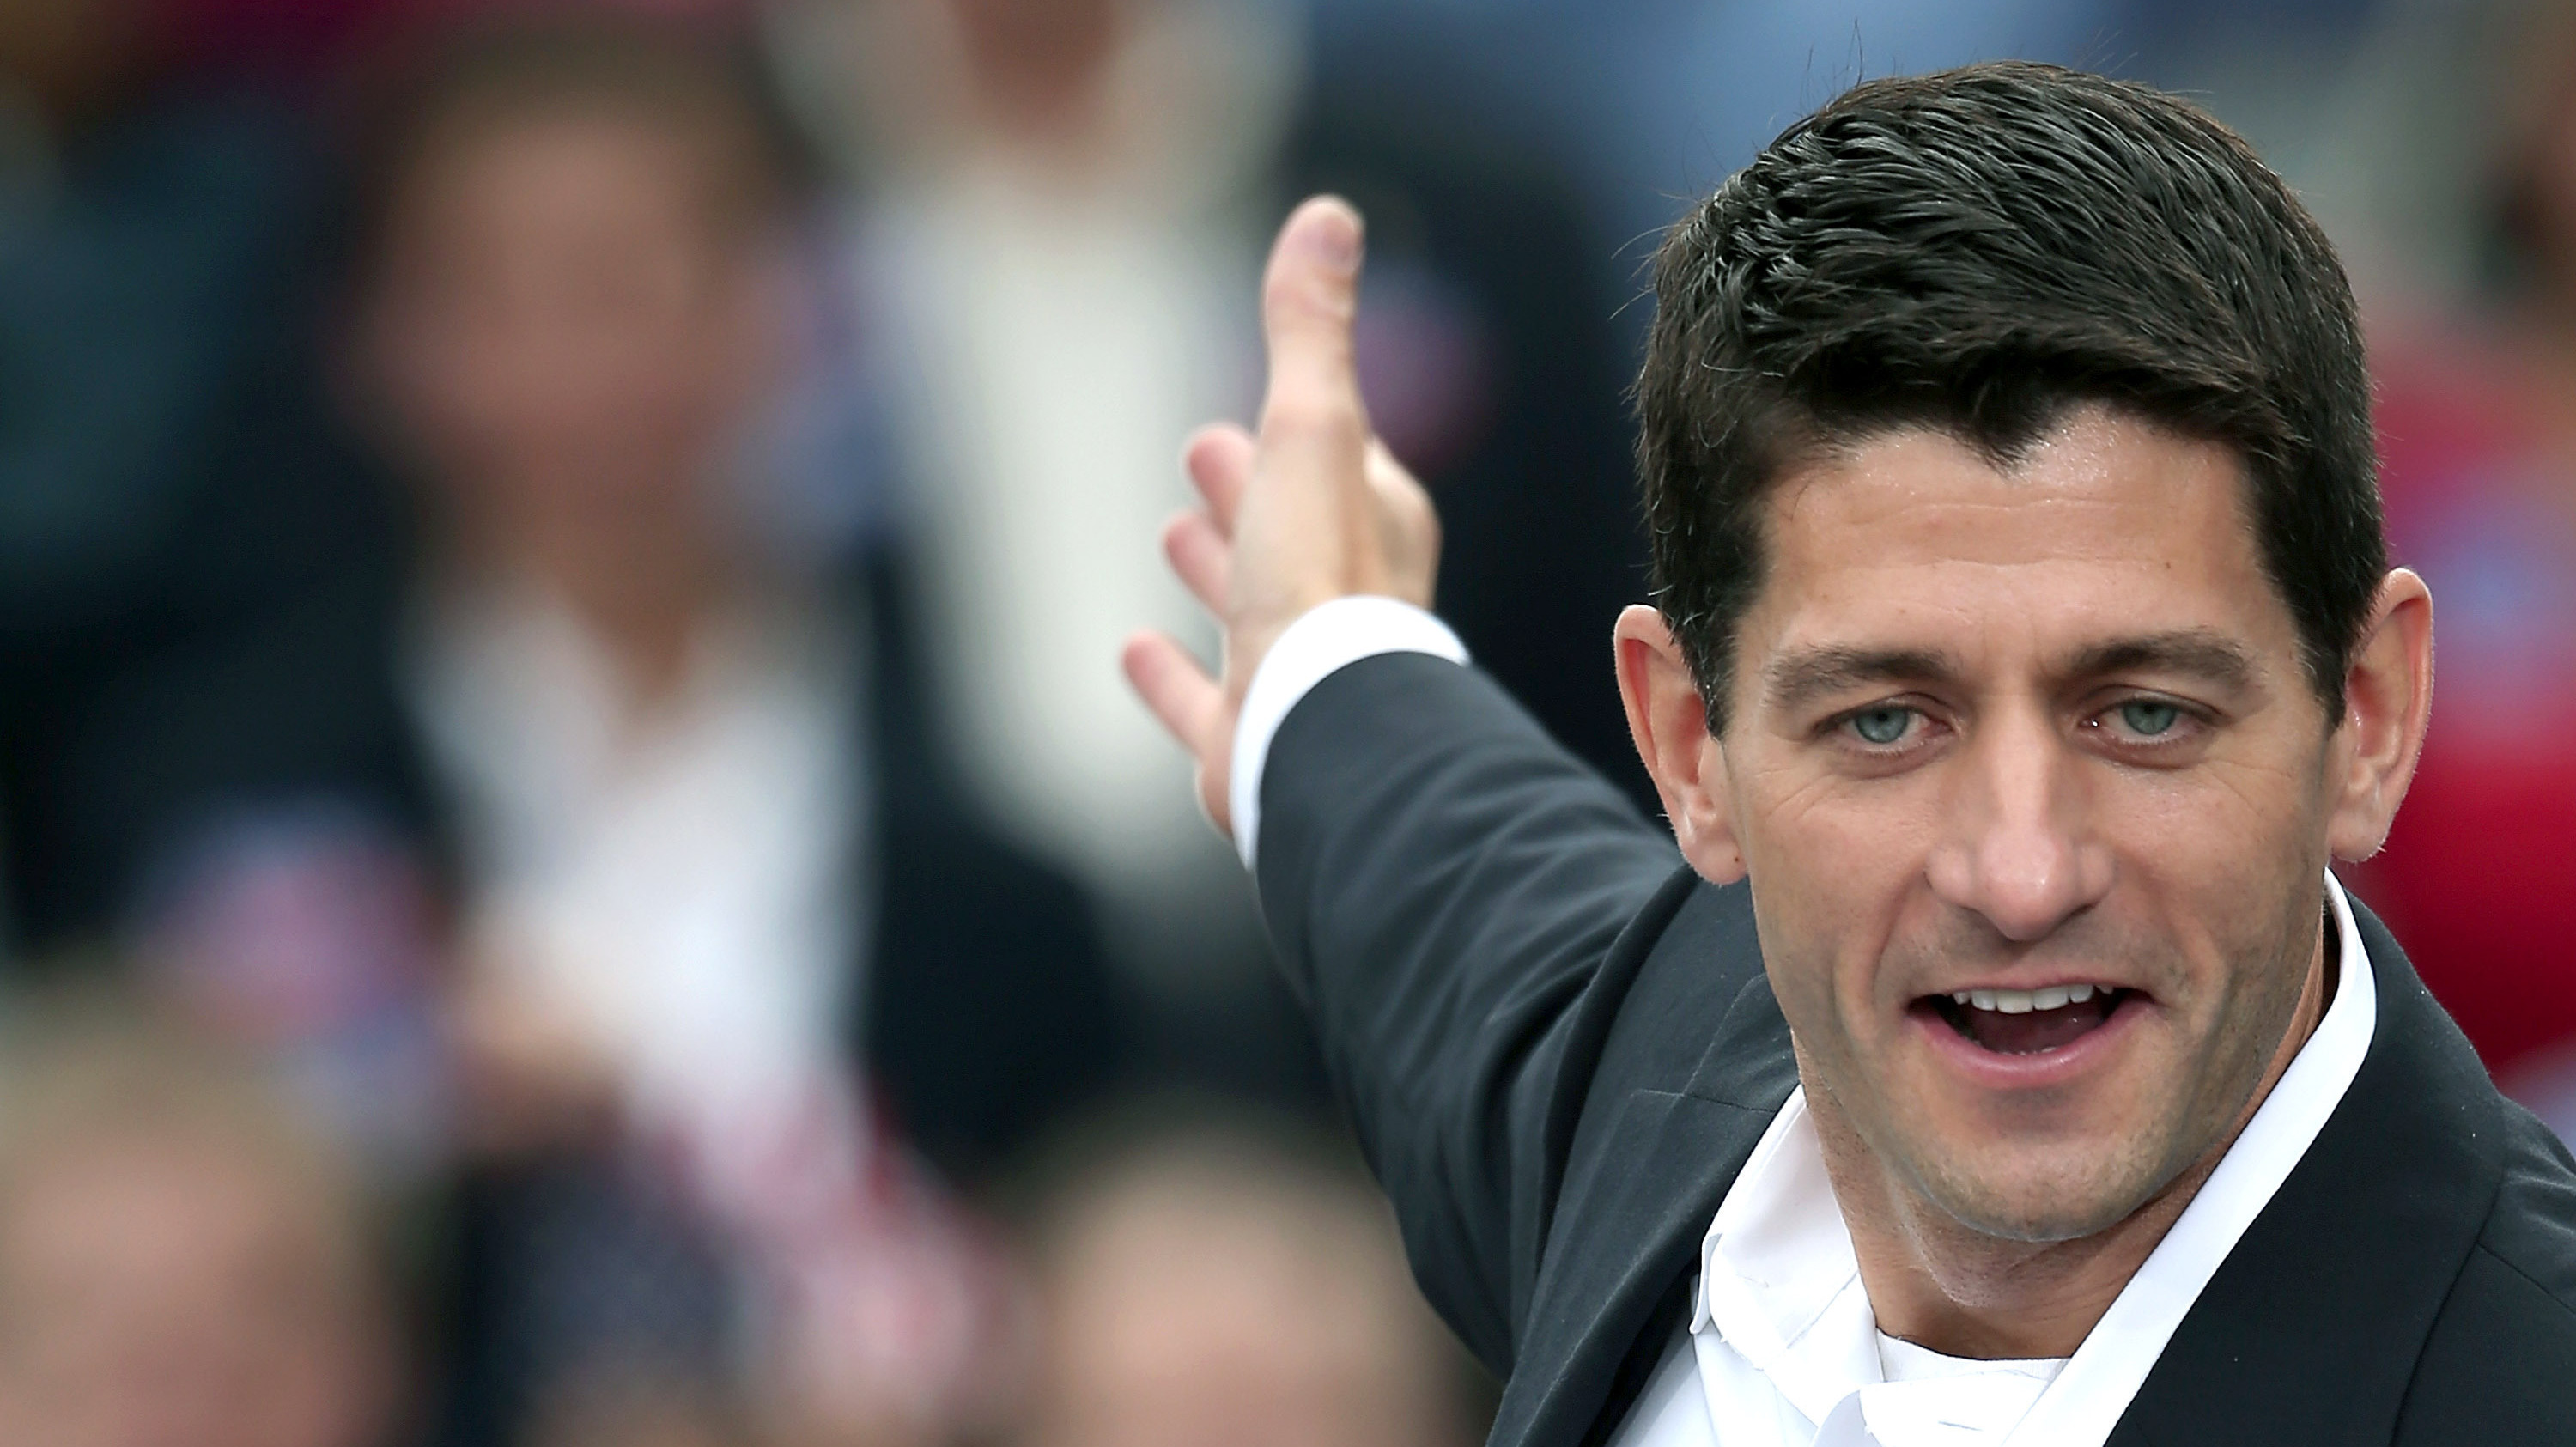 Předseda dolní komory amerického parlamentu Paul Ryan (pravicová Republikánská strana) (nationofchange.org)